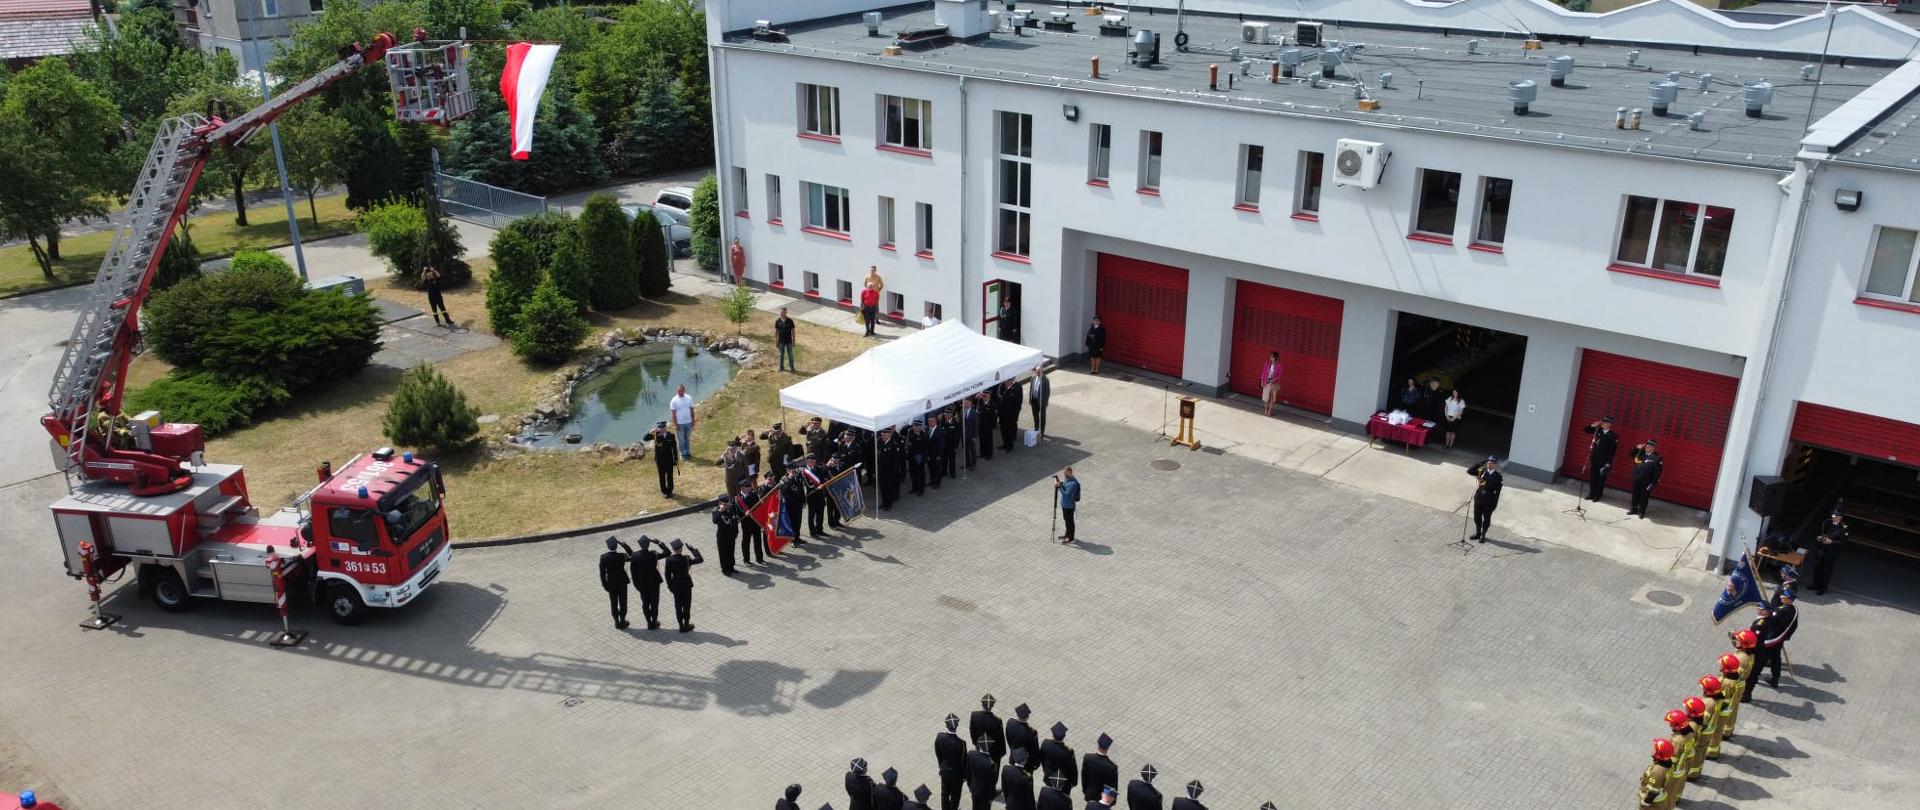 Zdjęcie przedstawia widok uroczystości, która ma miejsce na placu wewnętrznym komendy Powiatowej PSP w Krośnie Odrzańskim z lotu ptaka. Na zdjęciu widoczne są pojazdy oraz pododdziały oddające honory podczas podniesienia flagi państwowej.